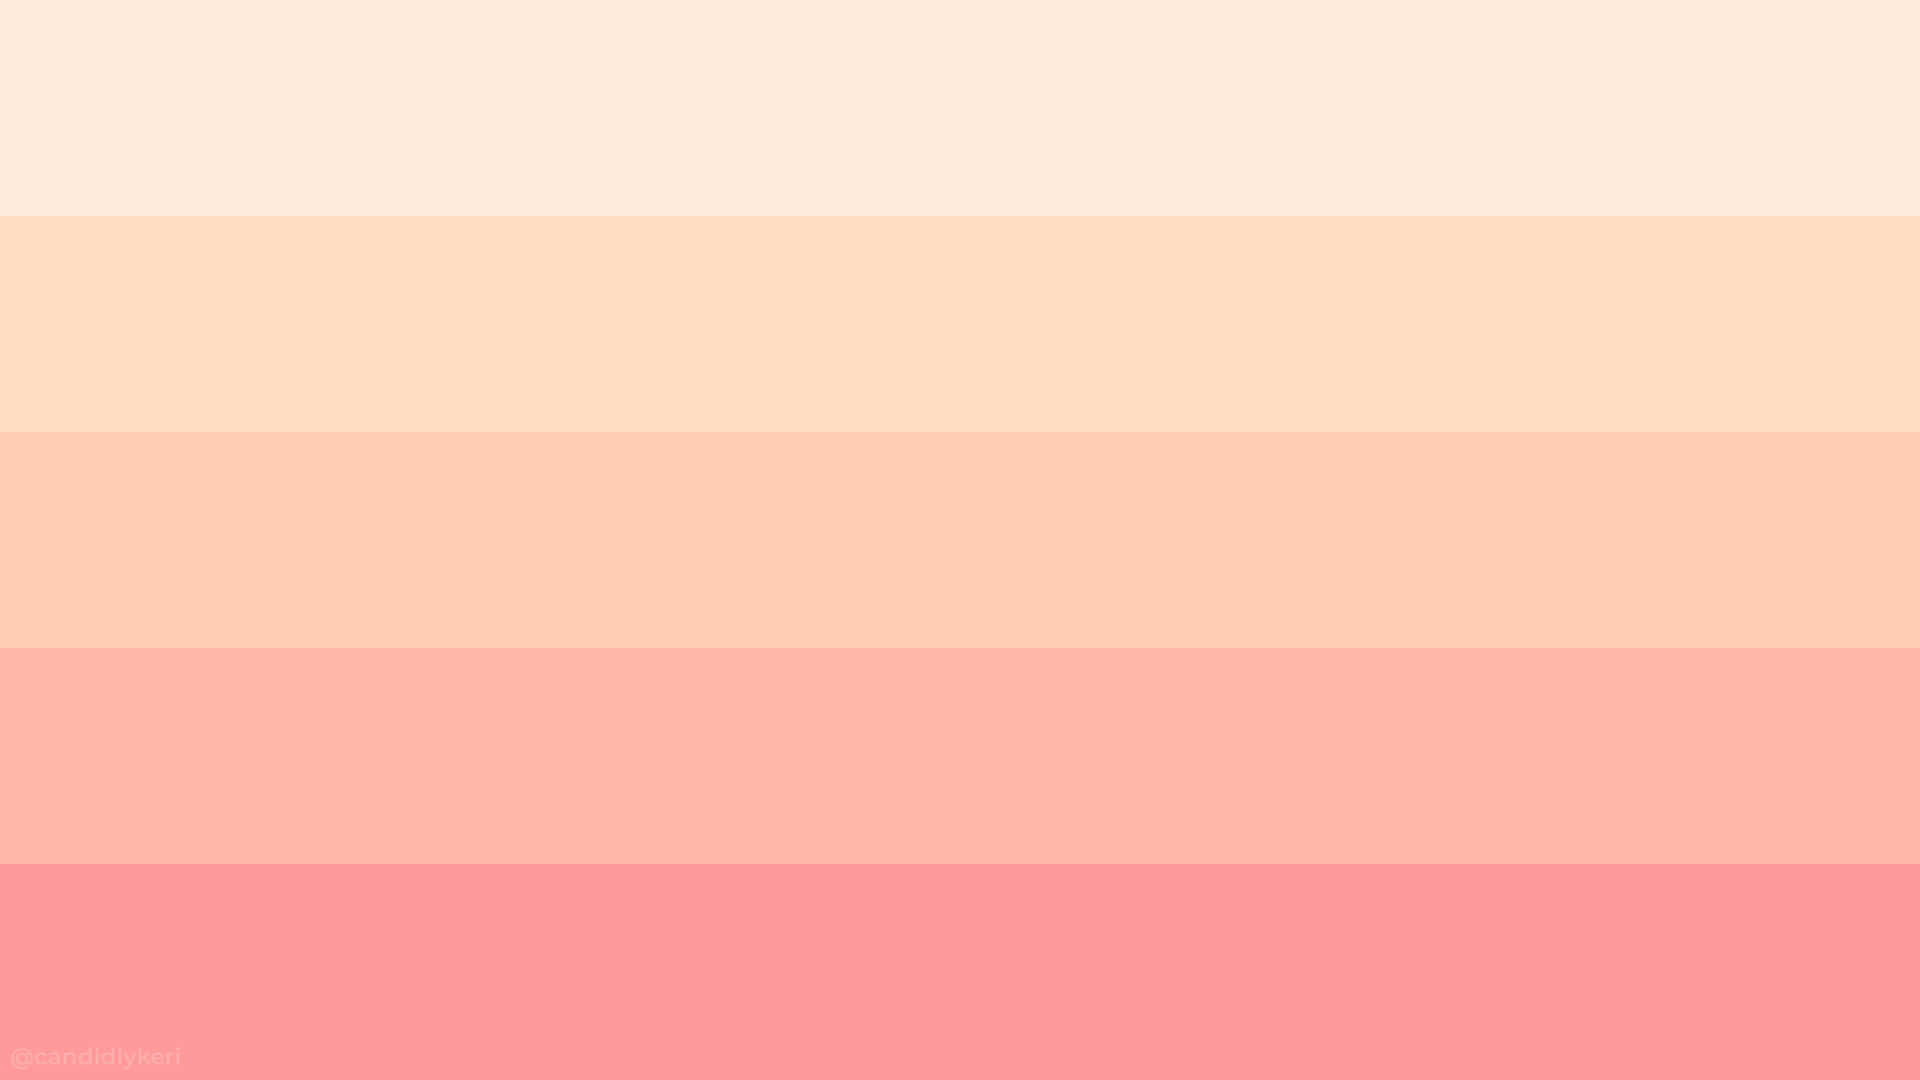 Disfrutade Colores Relajantes Y Rejuvenecedores: Rosa Y Blanco. Fondo de pantalla